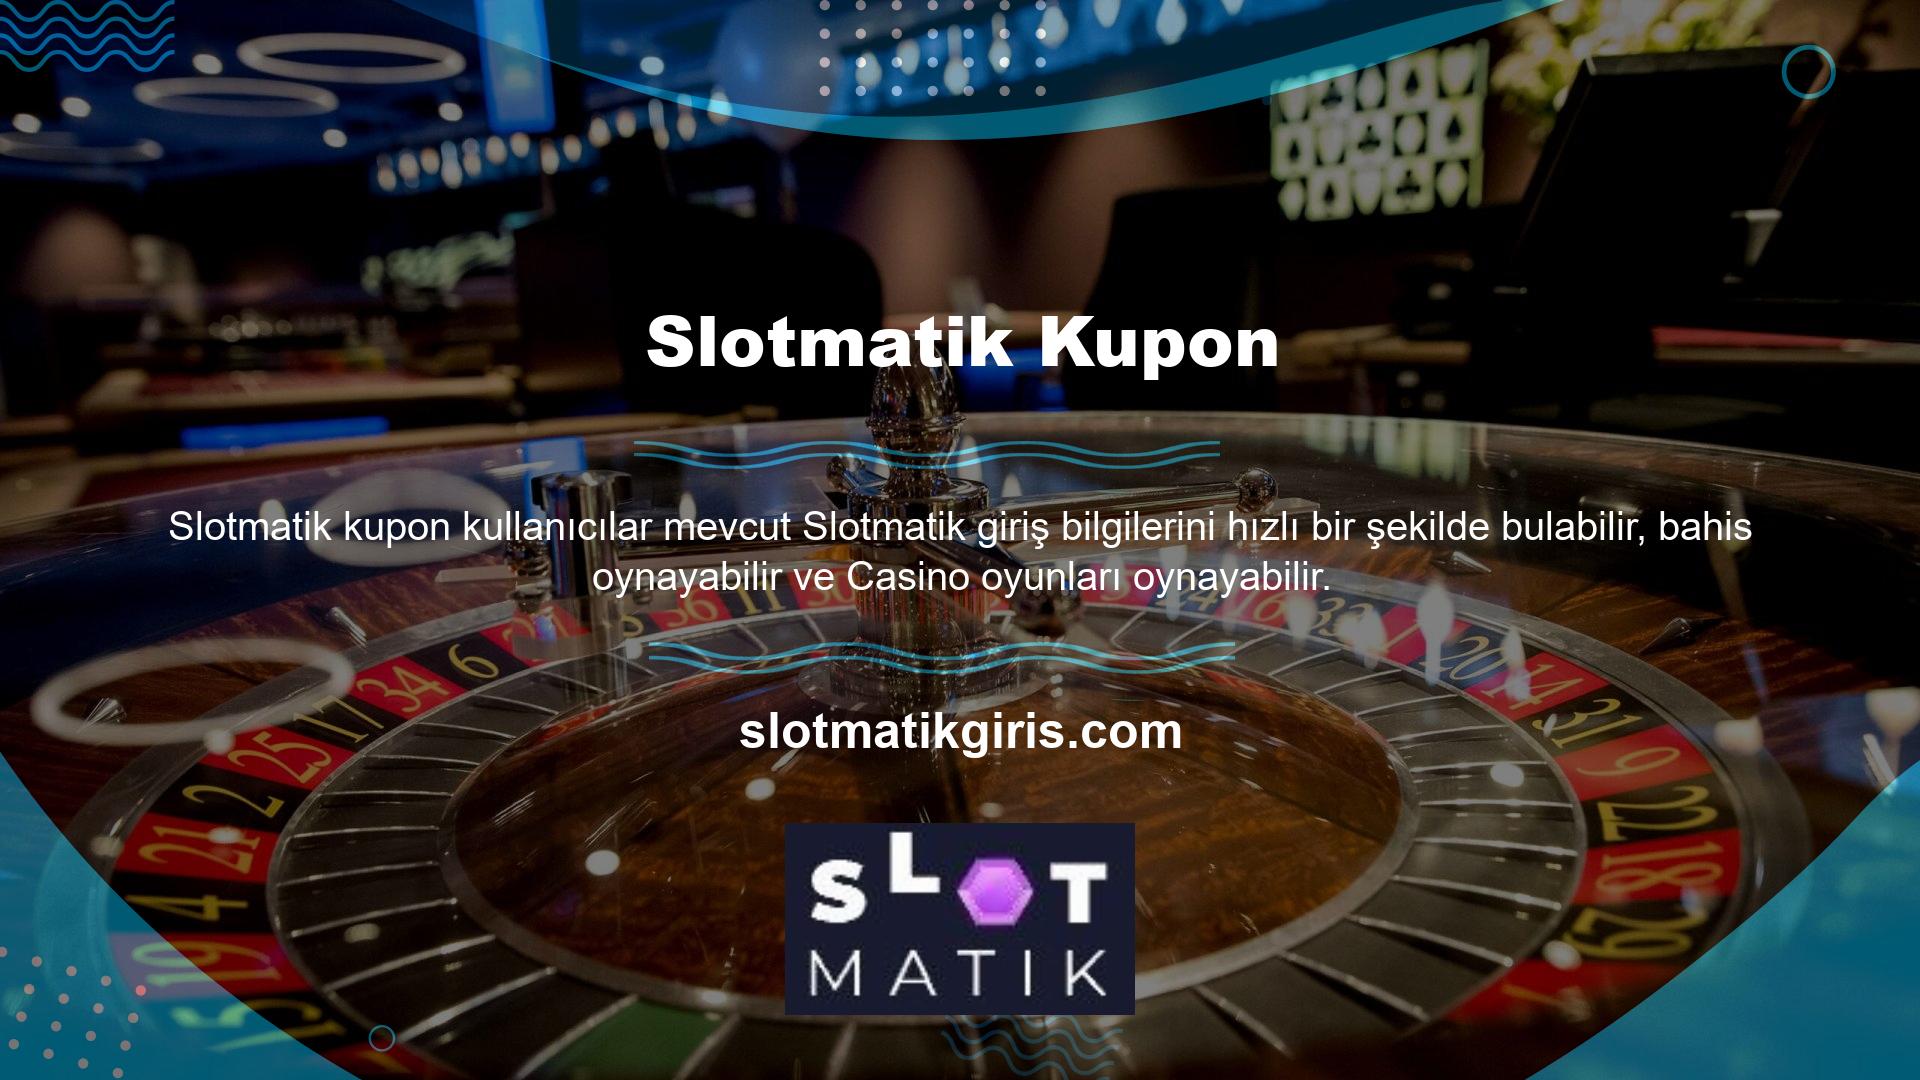 Slotmatik platformu, oyuncuların sektördeki en rekabetçi oyunlara sürekli olarak bahis oynayarak kazançlarını artırmalarına olanak tanır